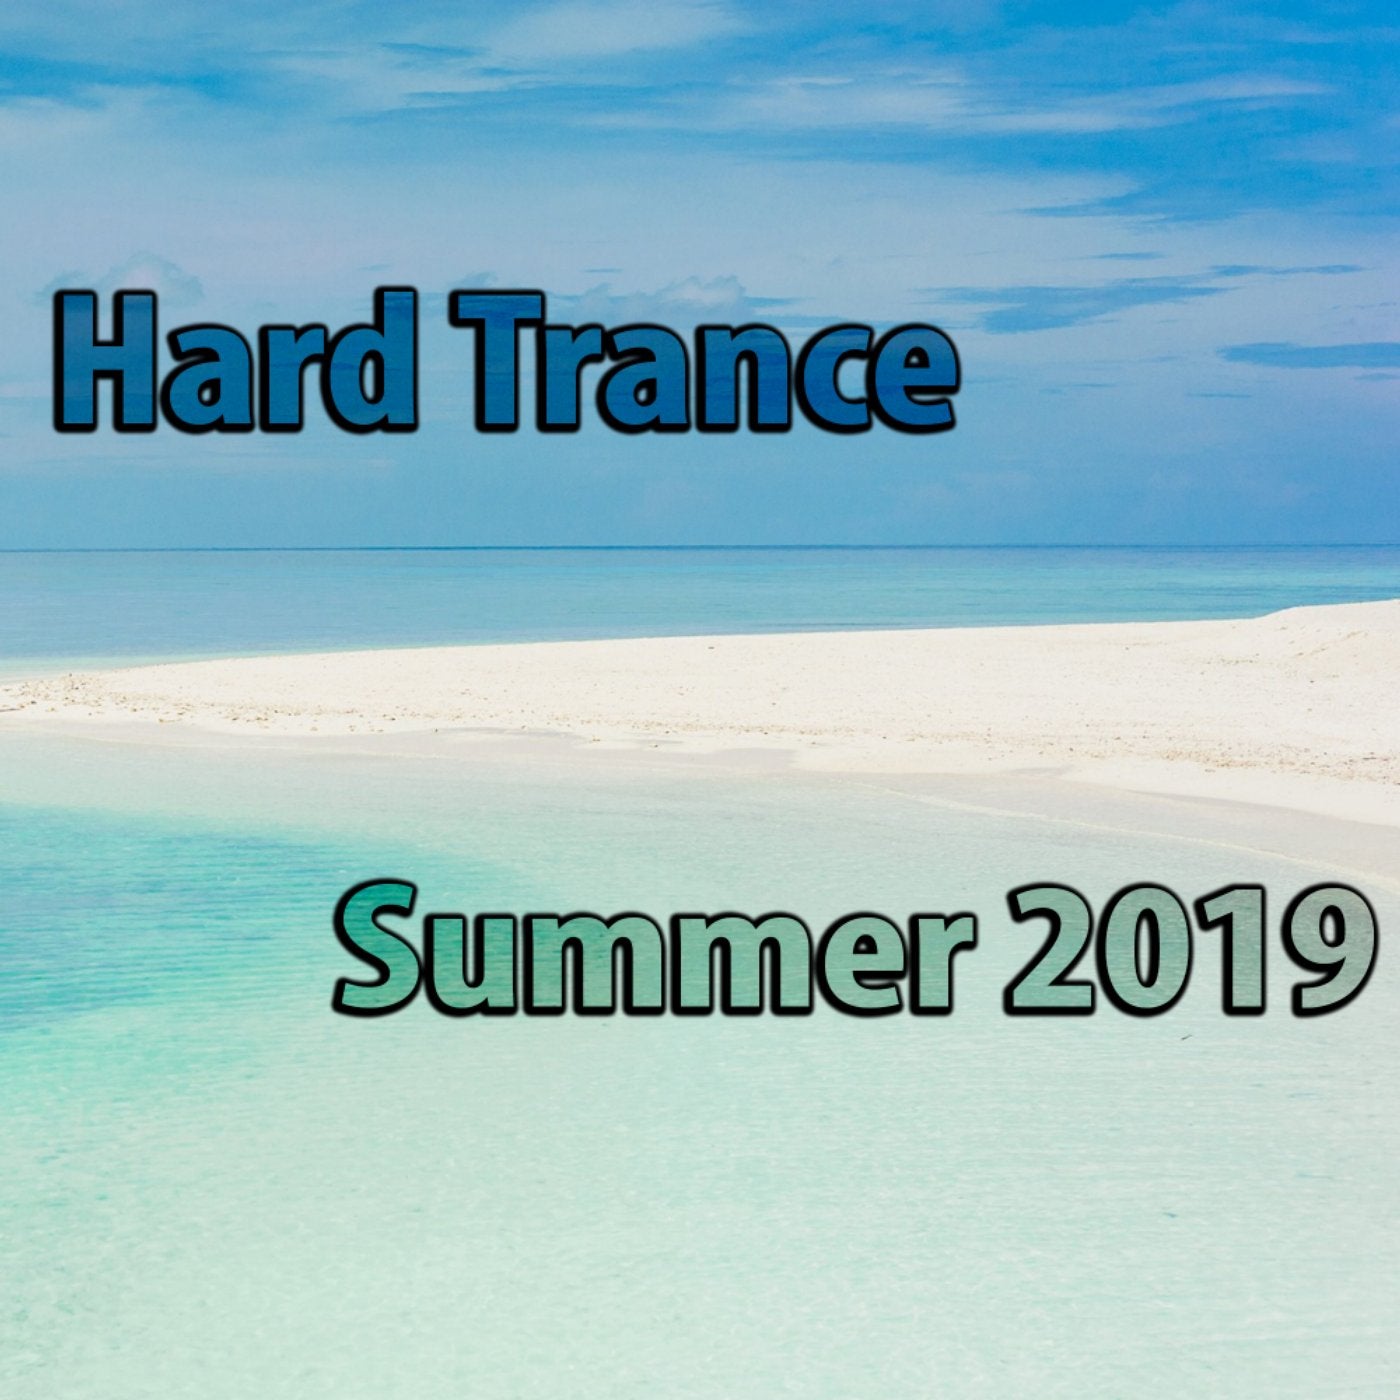 Hard Trance Summer 2019